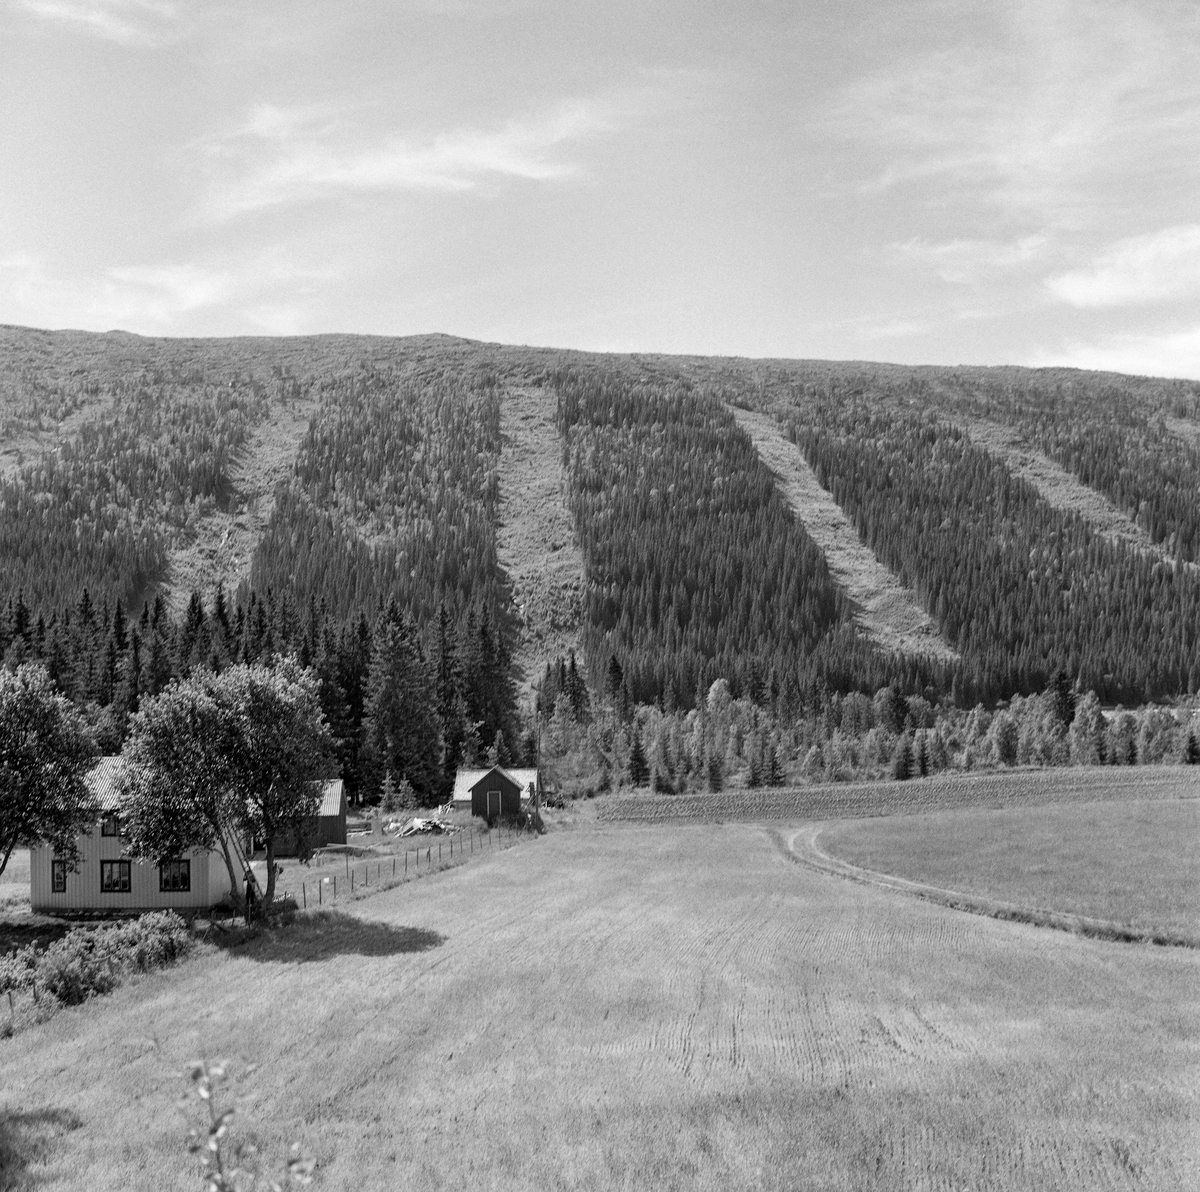 Belte- eller stripehogst i trelastfirmaet van Severens skoger i Grong i Nord-Trøndelag, fotografert i 1960. Bildet er tatt fra innmarka på et gardsbruk i lia på motsatt side av dalføret.  Herfra hadde fotografen god oversikt over skogen med belte- eller stripehogster.  Ved denne formen for avvirkning forsøkte man å kombinere snauhogst og naturlig reproduksjon av skogen på hogstfeltene via frøfall fra trærne i kantsonene. Dette avvirkningsprinsippet preget landskapet på den måten at det oppsto trebare belter eller striper i skogen, og ekstra tydelige ble de når de, som her, ble lagt i fallende retning mot dalbotnen.  Belte- eller stripehogster er en variant av det som i eldre litteratur ble kalt «teighogst», og som i nyere tid også har vært omtalt som «snauhogst» eller «åpen hogst». Slike driftsprinsipper, der alle trær på hogstfeltene ble fjernet, med sikte på å etablere en ny, ensaldret skog, ble vanlige etter 2. verdenskrig. Før den tid var hogstene oftest orientert mot de største og mest rettvokste trærne ved såkalte «plukkhogster» eller «dimensjonshogster». Sentrale norske skogakademikere gikk lenge inn for «bledning», der målet var å hogge enkelttrær i vekstfaser da de hadde optimal bruks- og omsetningsverdi, samtidig som andelen av undertrykte individer i den gjenstående veksterskogen skulle reduseres til et minimum. Dette prinsippet viste seg imidlertid vanskelig å implementere i gardsskogbruket, og i den nevnte etterkrigstida, med stor etterspørsel etter råstoff til så vel trelast- som treforedlingsindustri, fikk mer ulike former for flate- eller snauhogster større gjennomslag, ofte med påfølgende planting. Belte- eller stripehogstene skulle spare skogeierne for strevet med og utgiftene til planting.  Bredden på beltene eller stripene skulle ideelt sett avpasses etter høyden på trærne langs bestandskantene, for erfaring viste at frøfallet avtok utover snauflatene. Forstmennene antydet at frøfallet ville bli jevnt og tilfredsstillende stort i et område som strakte seg om lang 1 ¼ gang høyden av frøtrærne langs bestandskantene. Var omliggende skog om lag 20 meter høy, ble anbefalt bredde på beltene eller stripene som skulle snauhogges om lag 50 meter. De driftsansvarlige måtte dessuten ta hensyn til at man kunne få god frøspredning over mer enn en og en kvart gang frøtrærnes lengde i hellende terreng, men at spredningsarealet ble smalere i motbakker. Skogforskeren Elias Mork dokumenterte etter hvert at hogstbeltene eller hogststripene kunne bli kuldesjakter, der den naturlige tilveksten lett fikk frostskader, når de ble plassert med hellende terreng, slik som på dette fotografiet. Derfor anbefalte Mork at belte- eller stripehogstene helst burde legges noenlunde parallelt med høydekurvene, ikke på tvers av dem. Tanken var at de avskogede beltene skulle utvides suksessivt, etter at de opprinnelige snauhogde arealene hadde fått gjenvekst av små bartrær. Belte- eller stripehogstene ble aldri veldig vanlige. I den perioden da dette fotografiet ble tatt valgte grunneierne å plante på de fleste hogstflater.